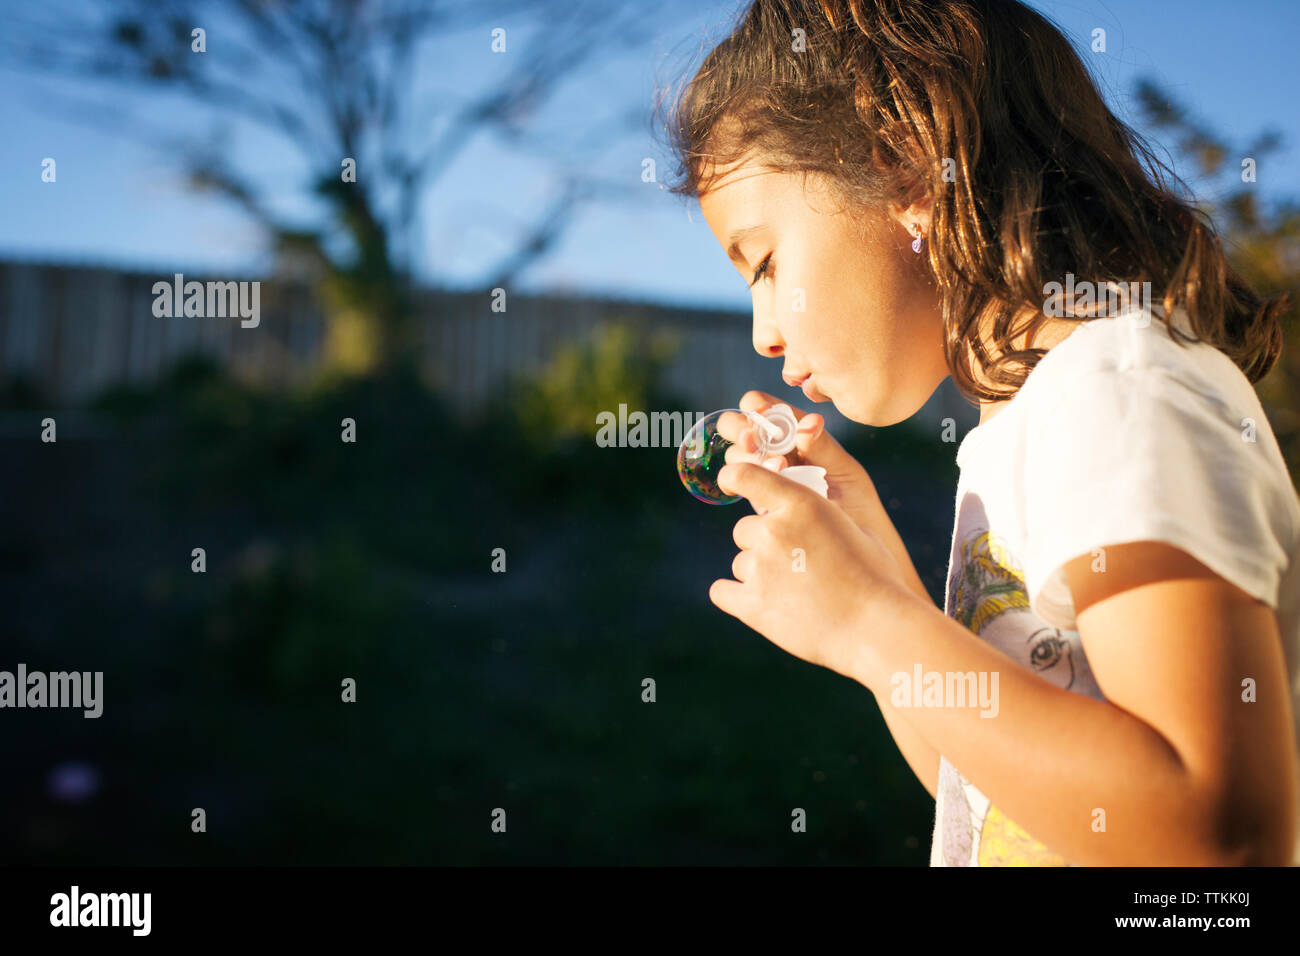 Close-up of girl blowing bubble avec baguette sur sunny day Banque D'Images